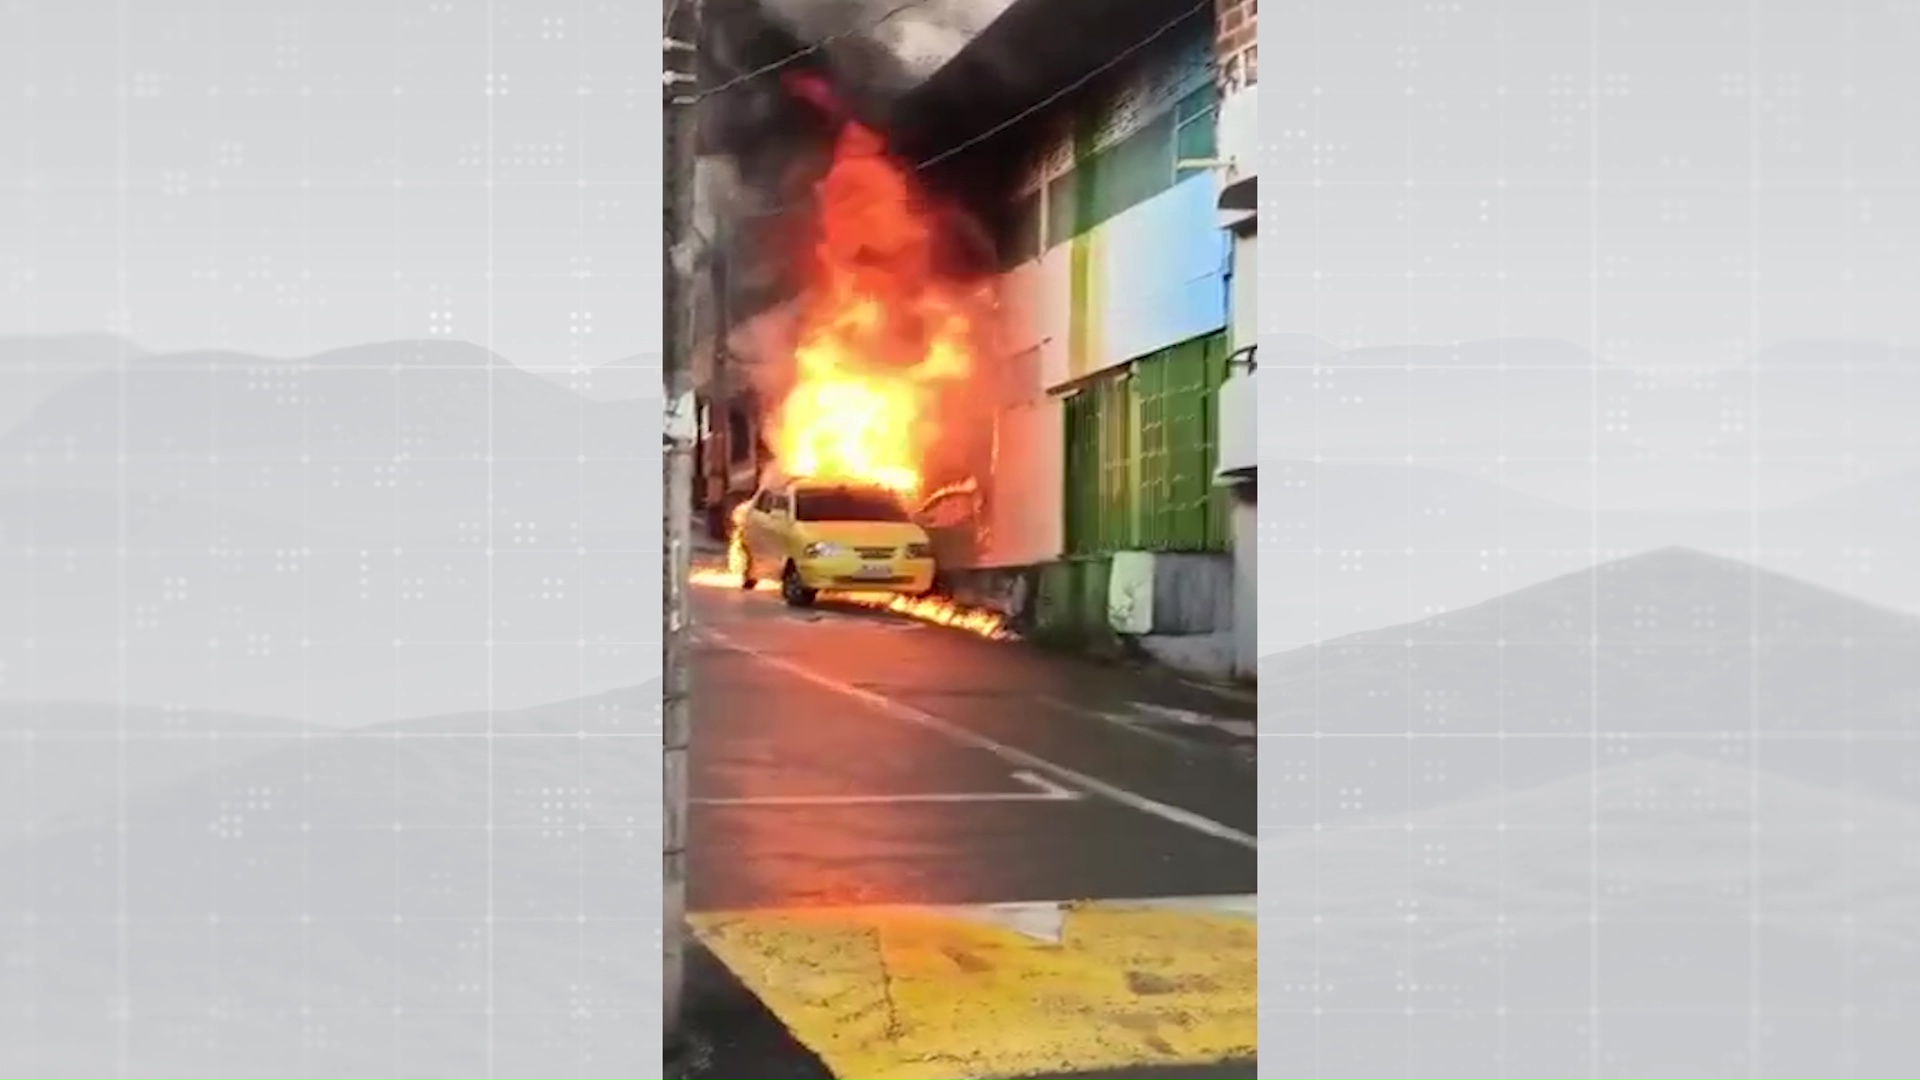 Reparación de taxi provocó incendio que afectó una bodega